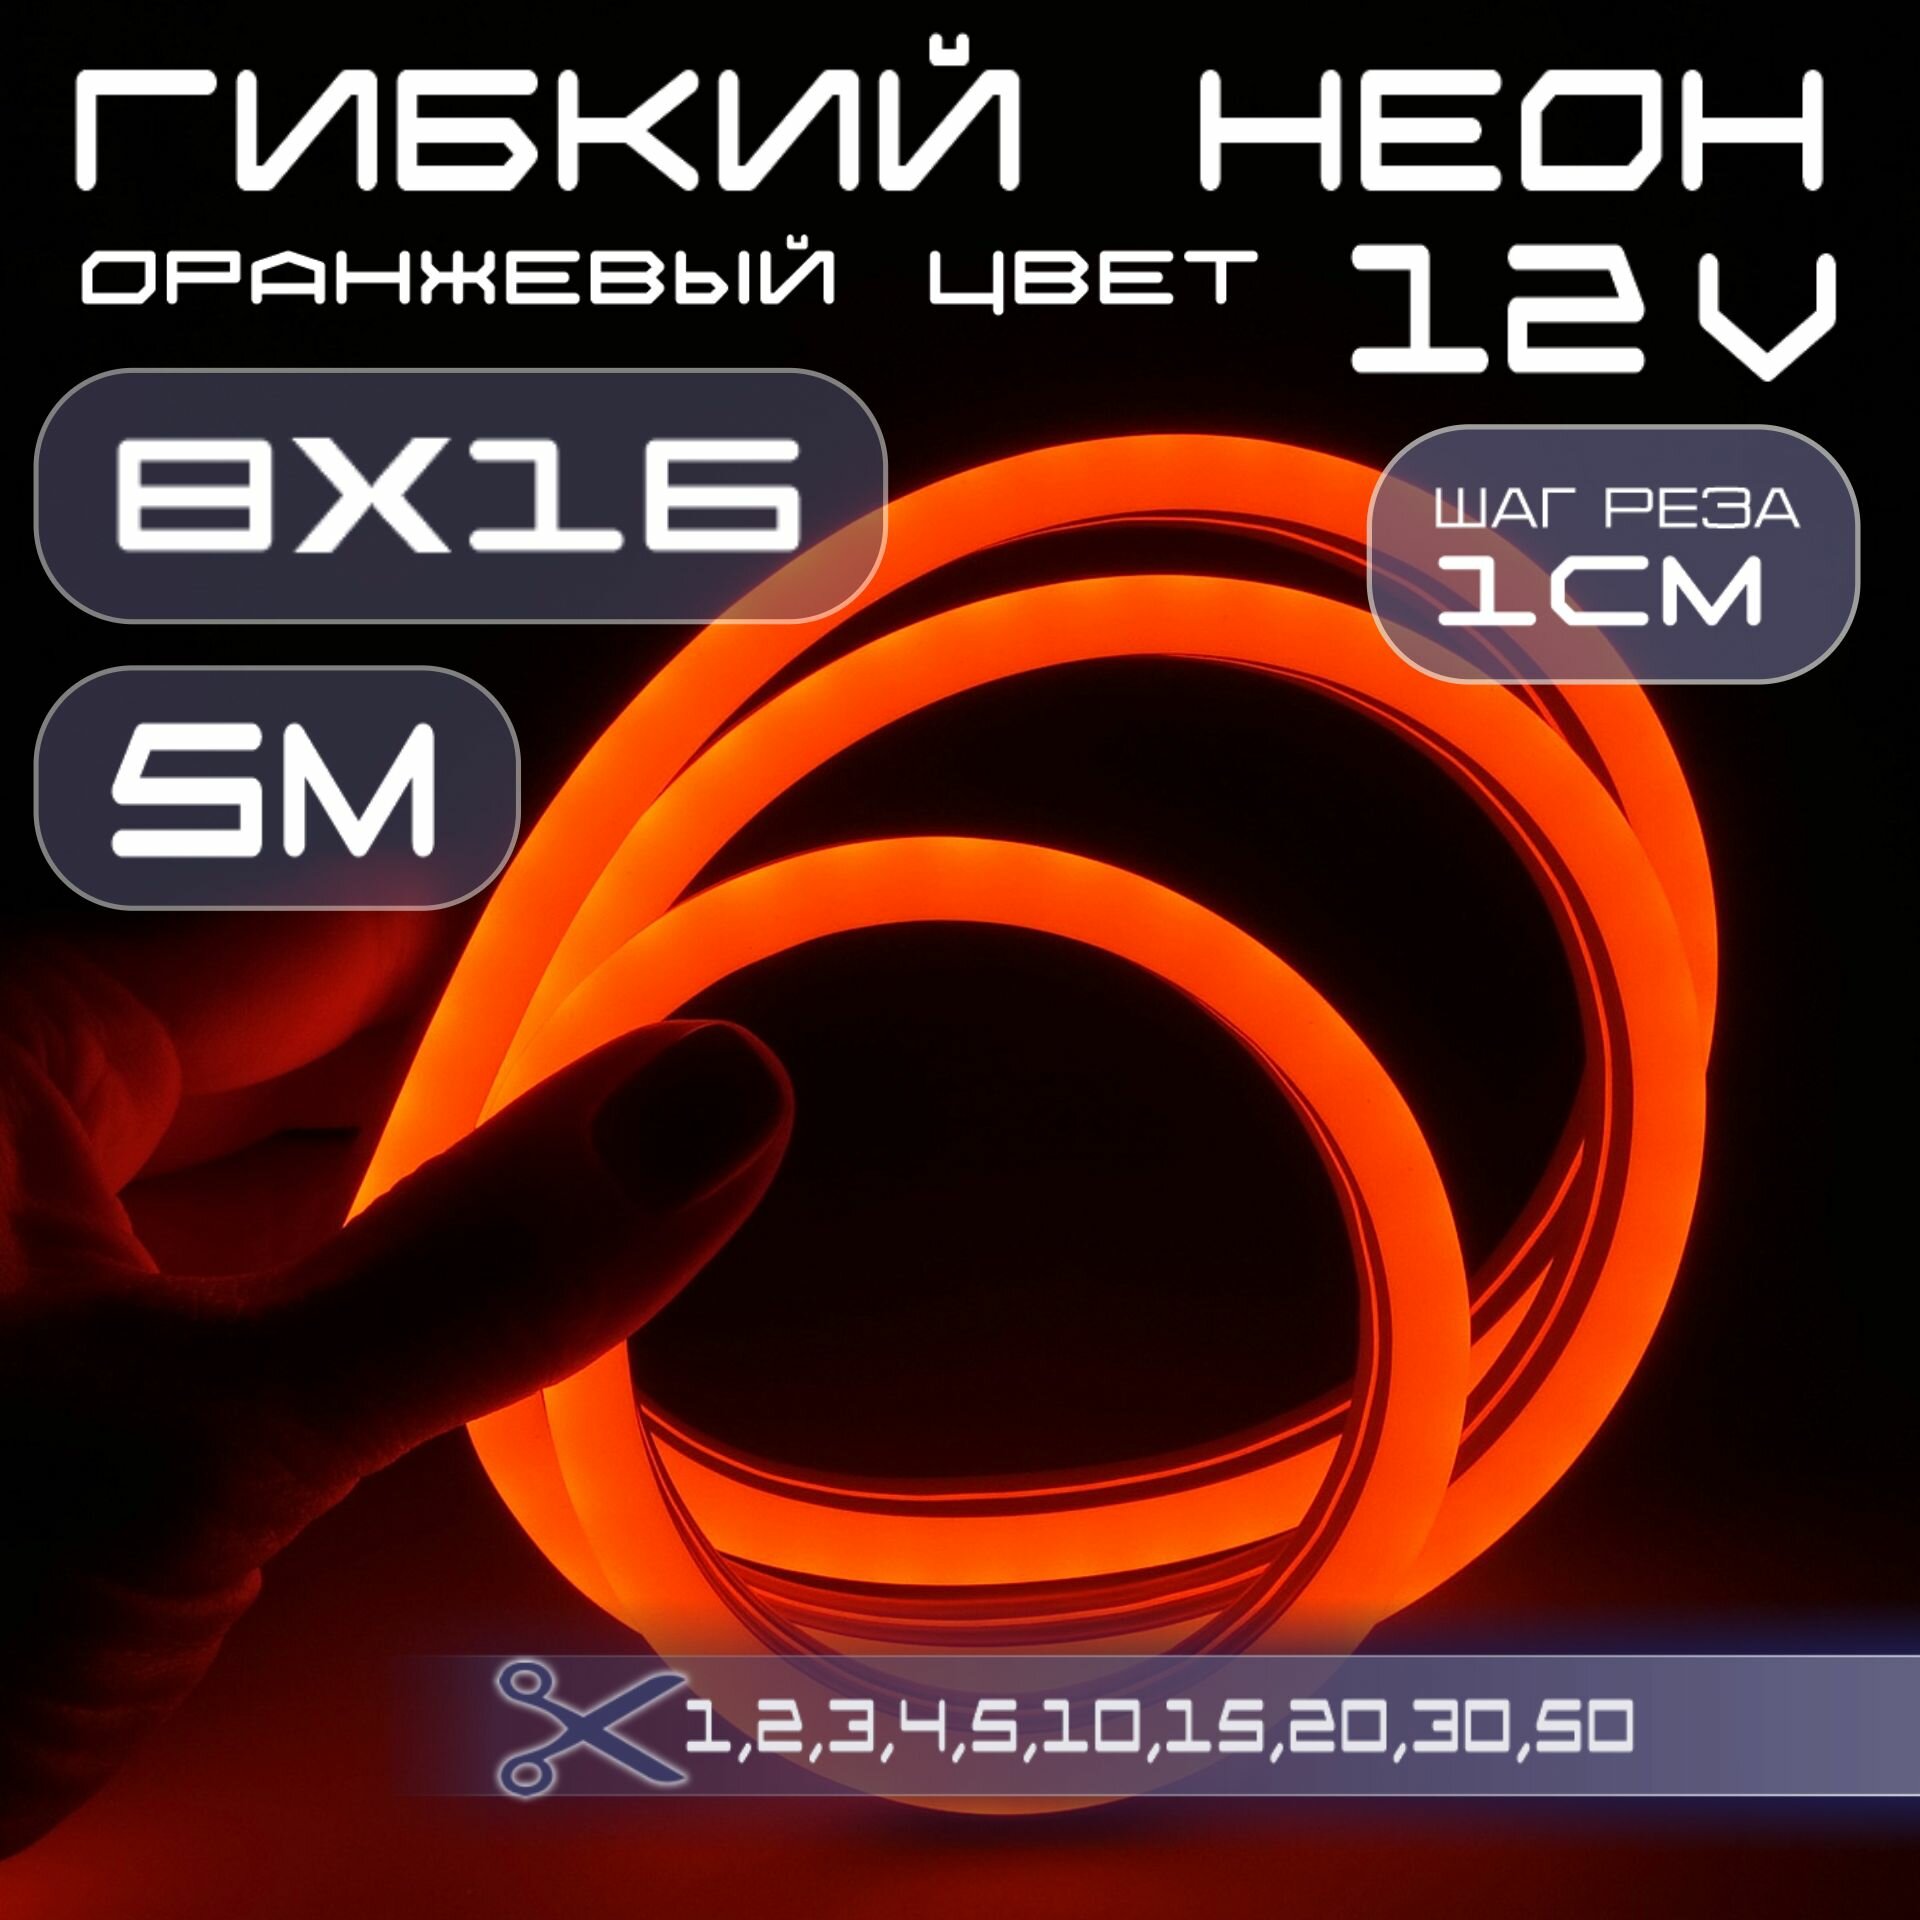 Гибкий неон 12V оранжевый 8х16, 10W, 110 Led, IP67 шаг реза 1 см, 5 метров